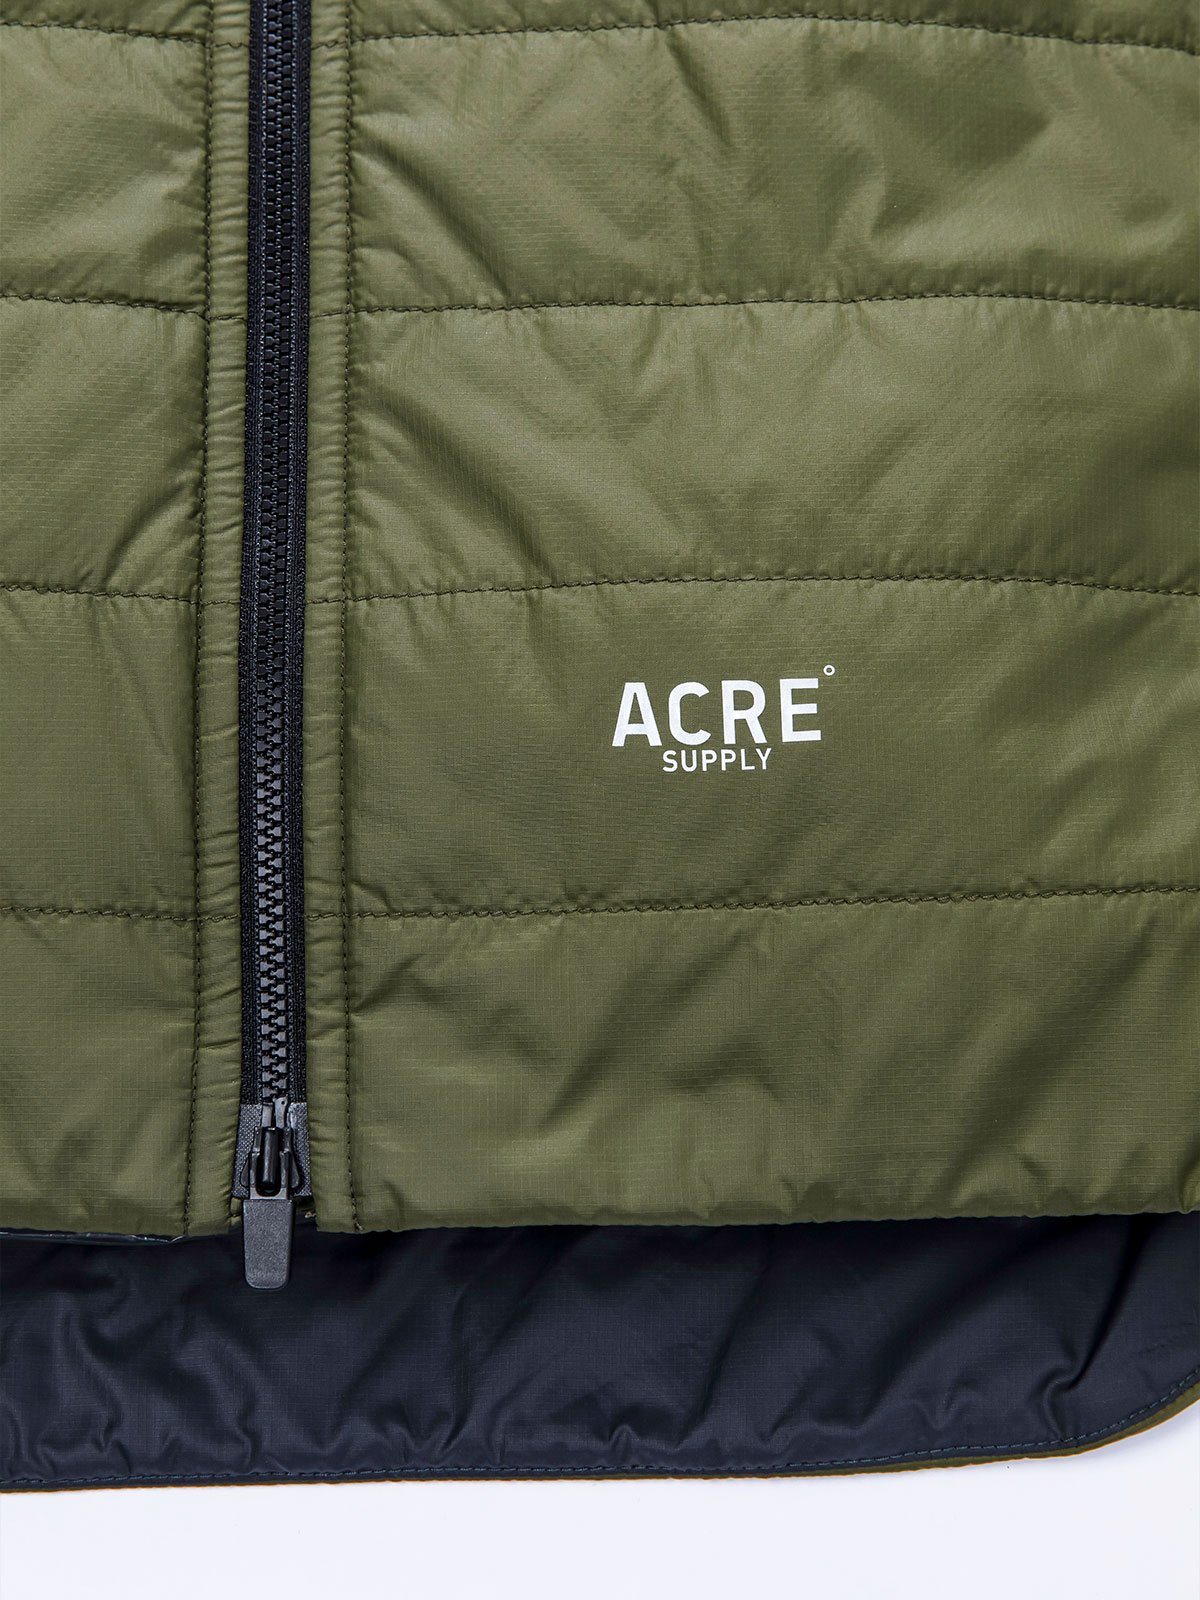 Acre Series Jacket by Mission Workshop - Bolsas resistentes a la intemperie y ropa técnica - San Francisco y Los Ángeles - Construidas para durar - Garantizadas para siempre